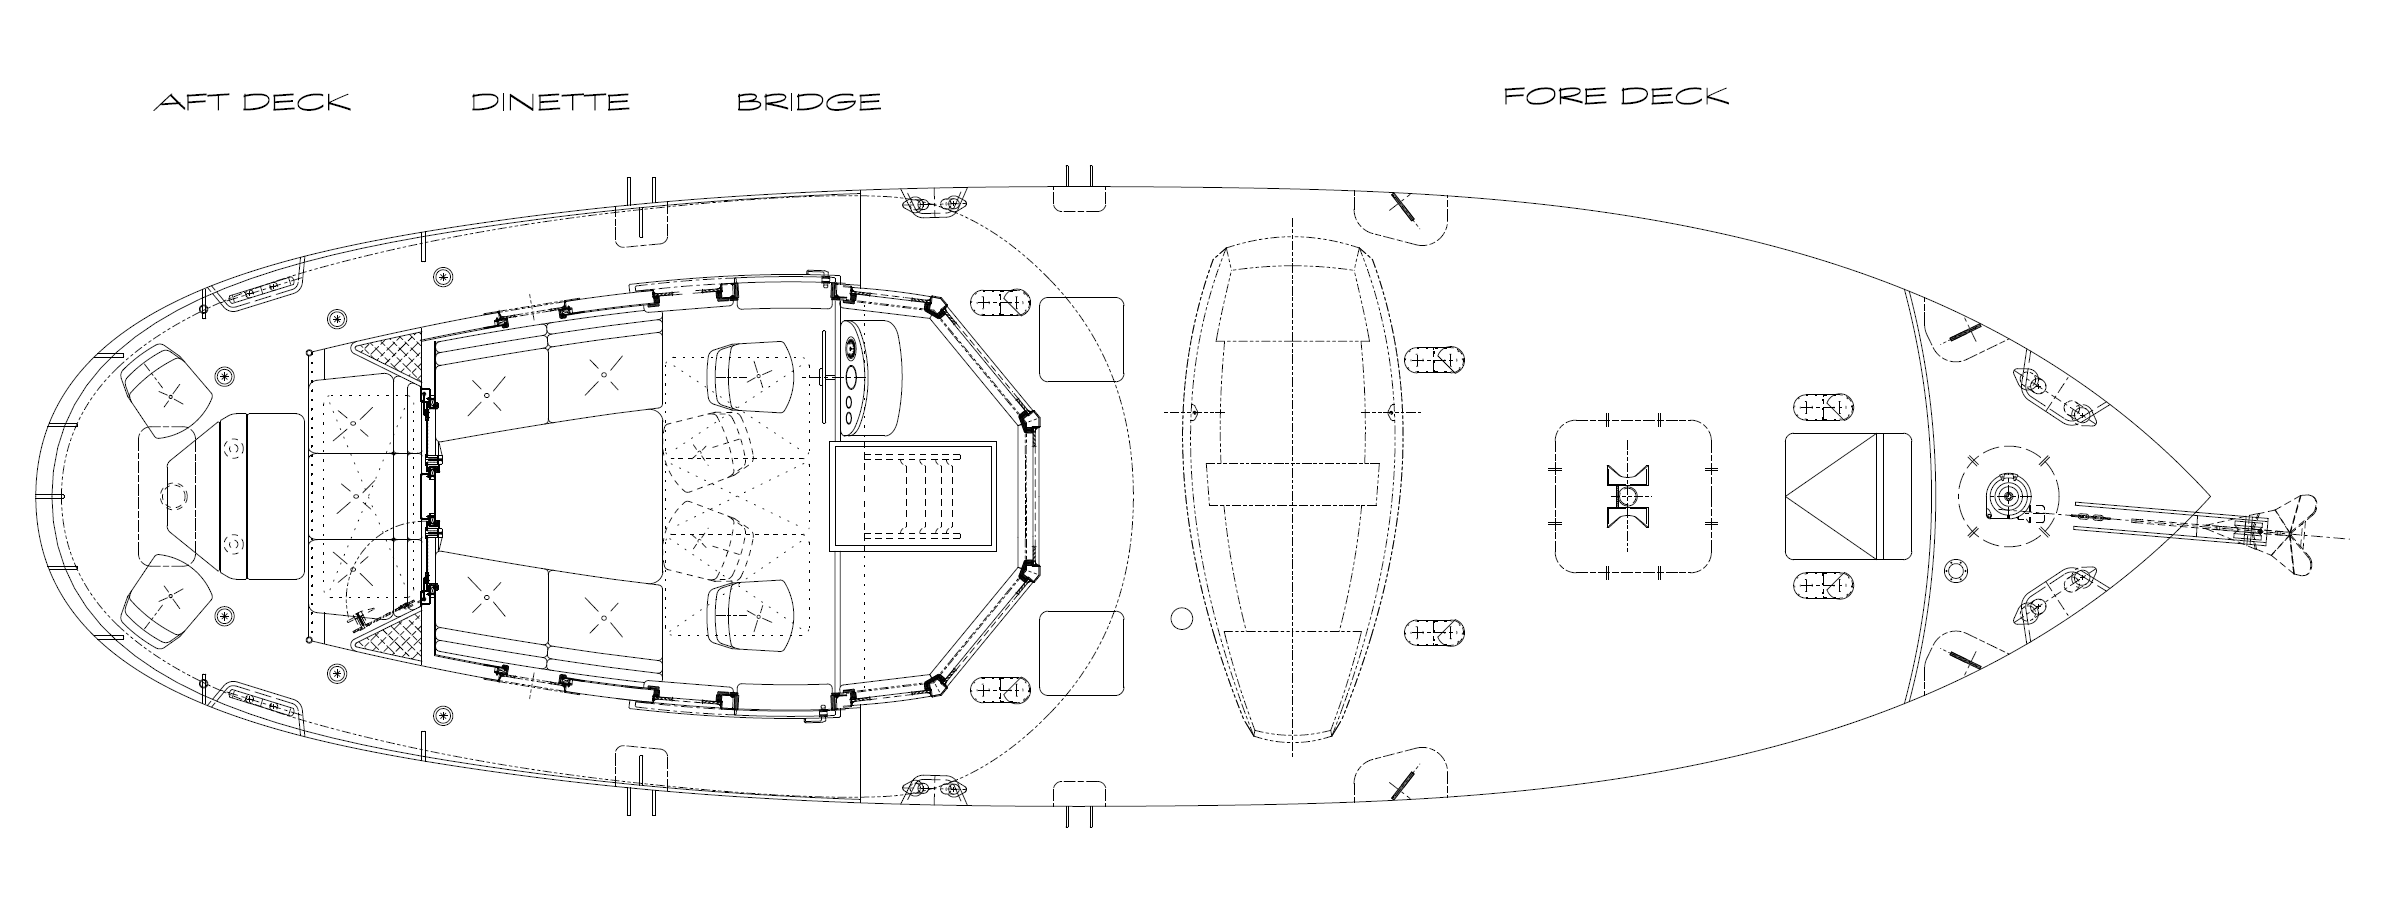 RJ-43 Deck Plan - Kasten Marine Design, Inc.